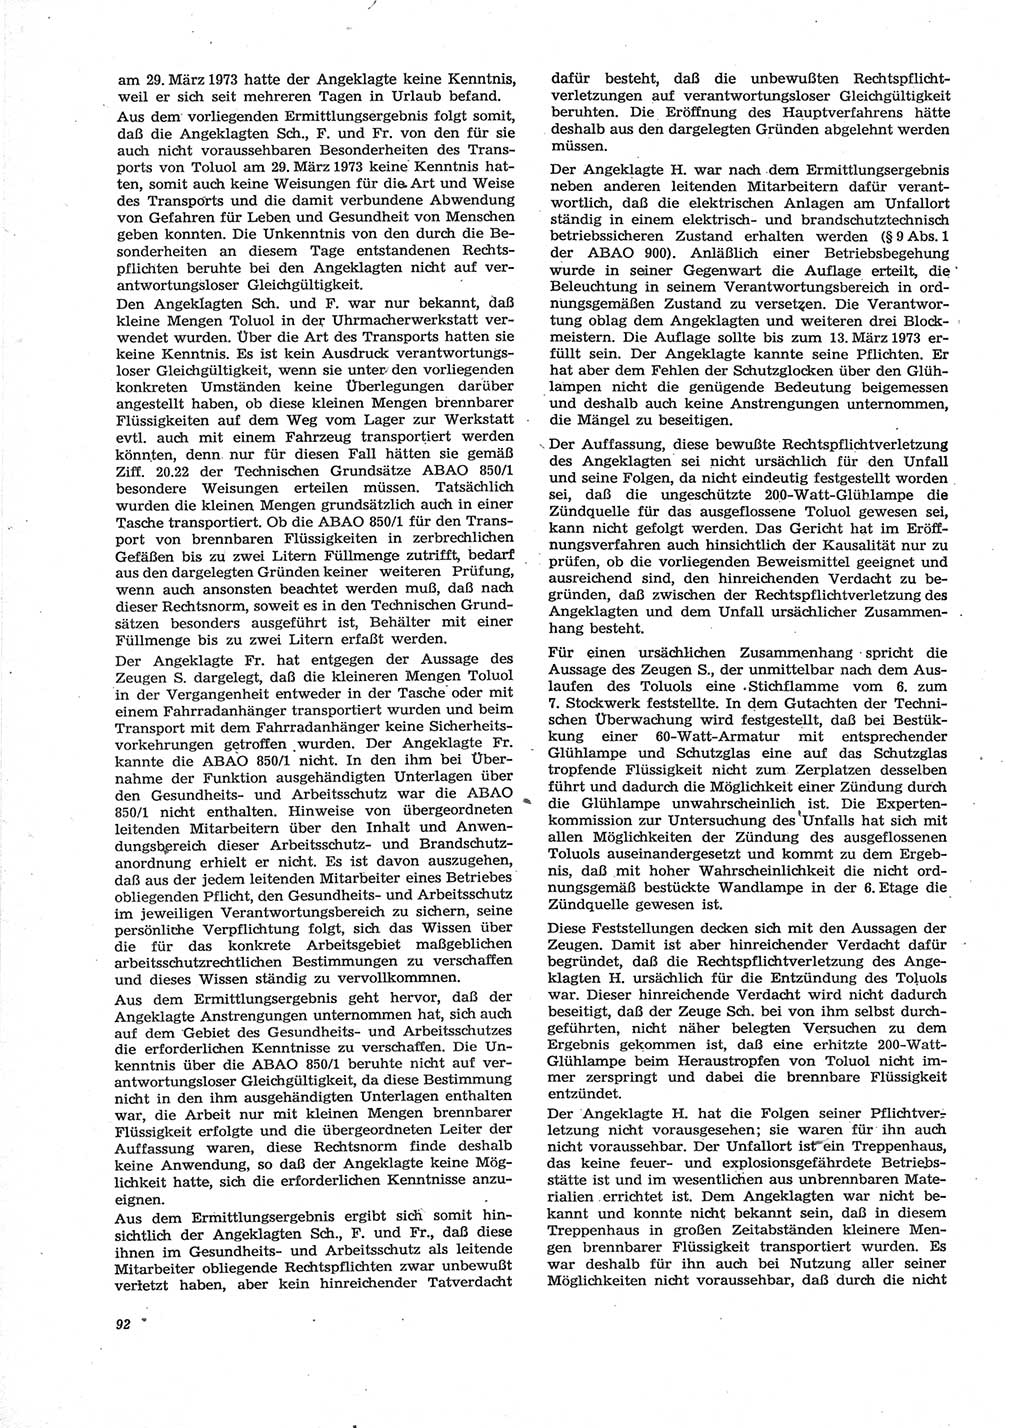 Neue Justiz (NJ), Zeitschrift für Recht und Rechtswissenschaft [Deutsche Demokratische Republik (DDR)], 28. Jahrgang 1974, Seite 92 (NJ DDR 1974, S. 92)